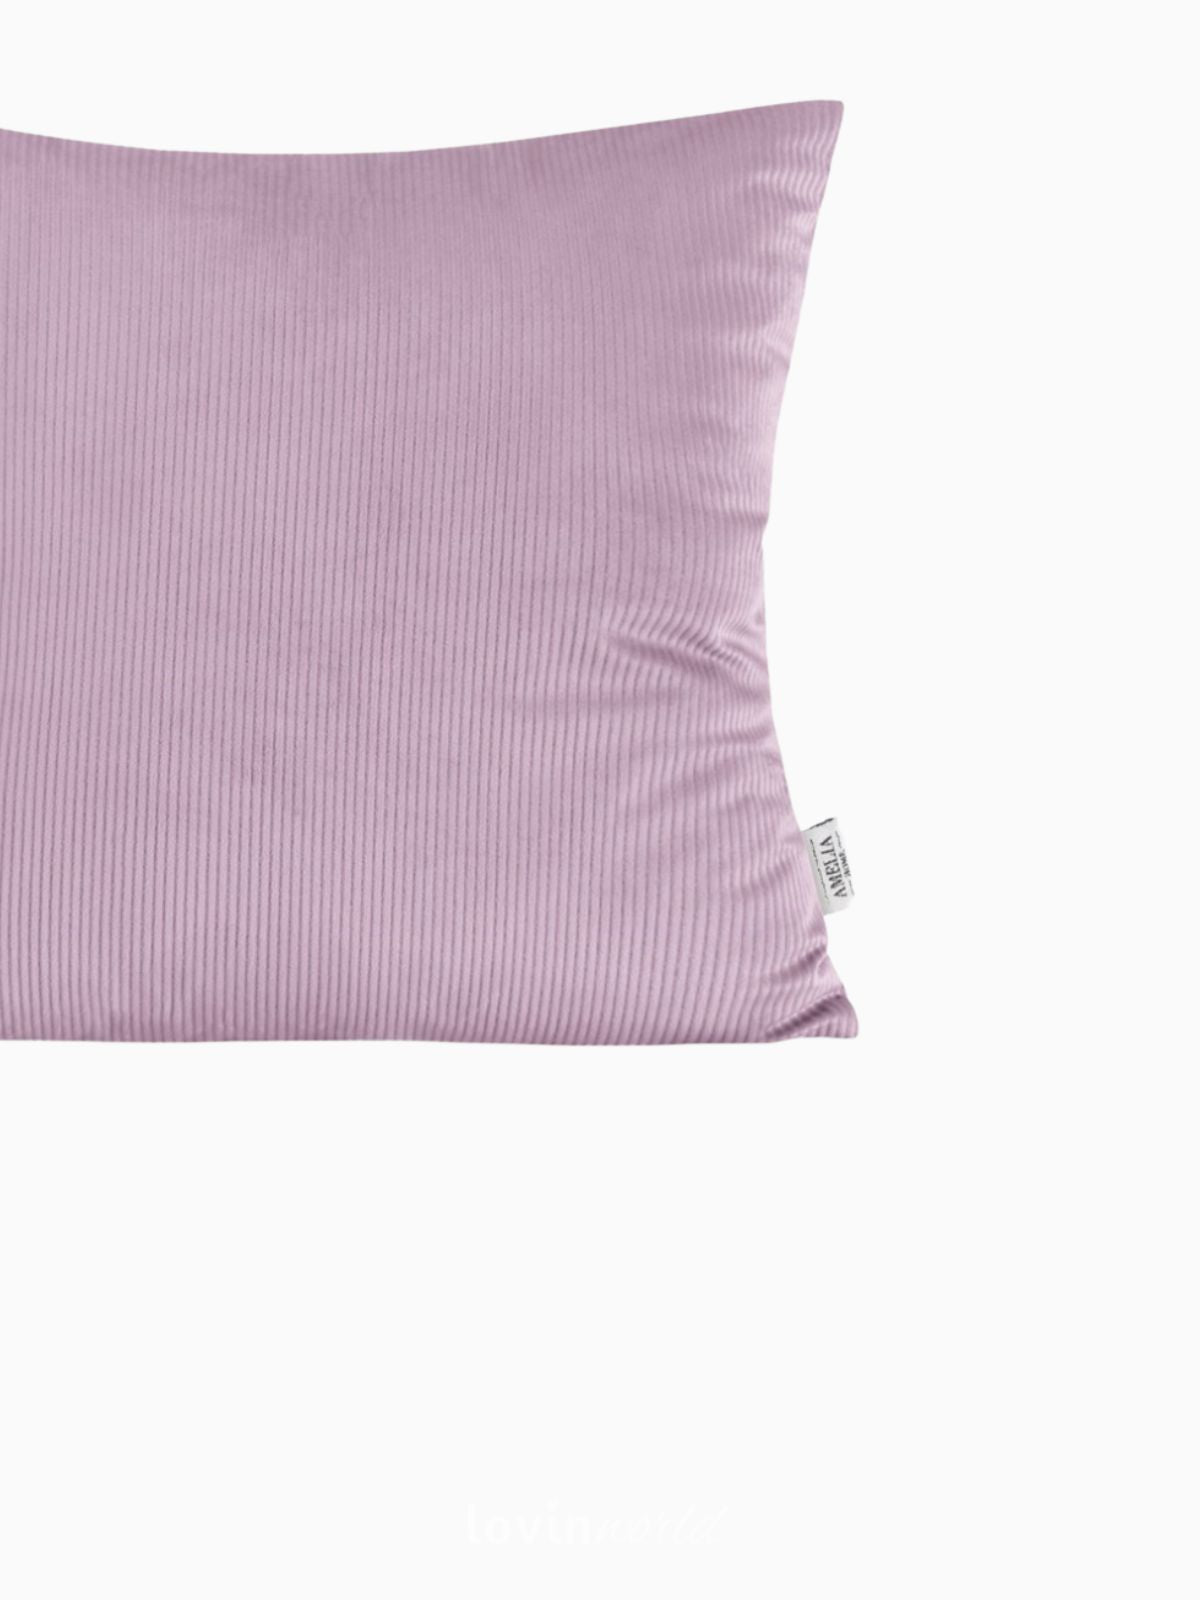 Cuscino decorativo in velluto Duffy, colore rosa 45x45 cm.-3